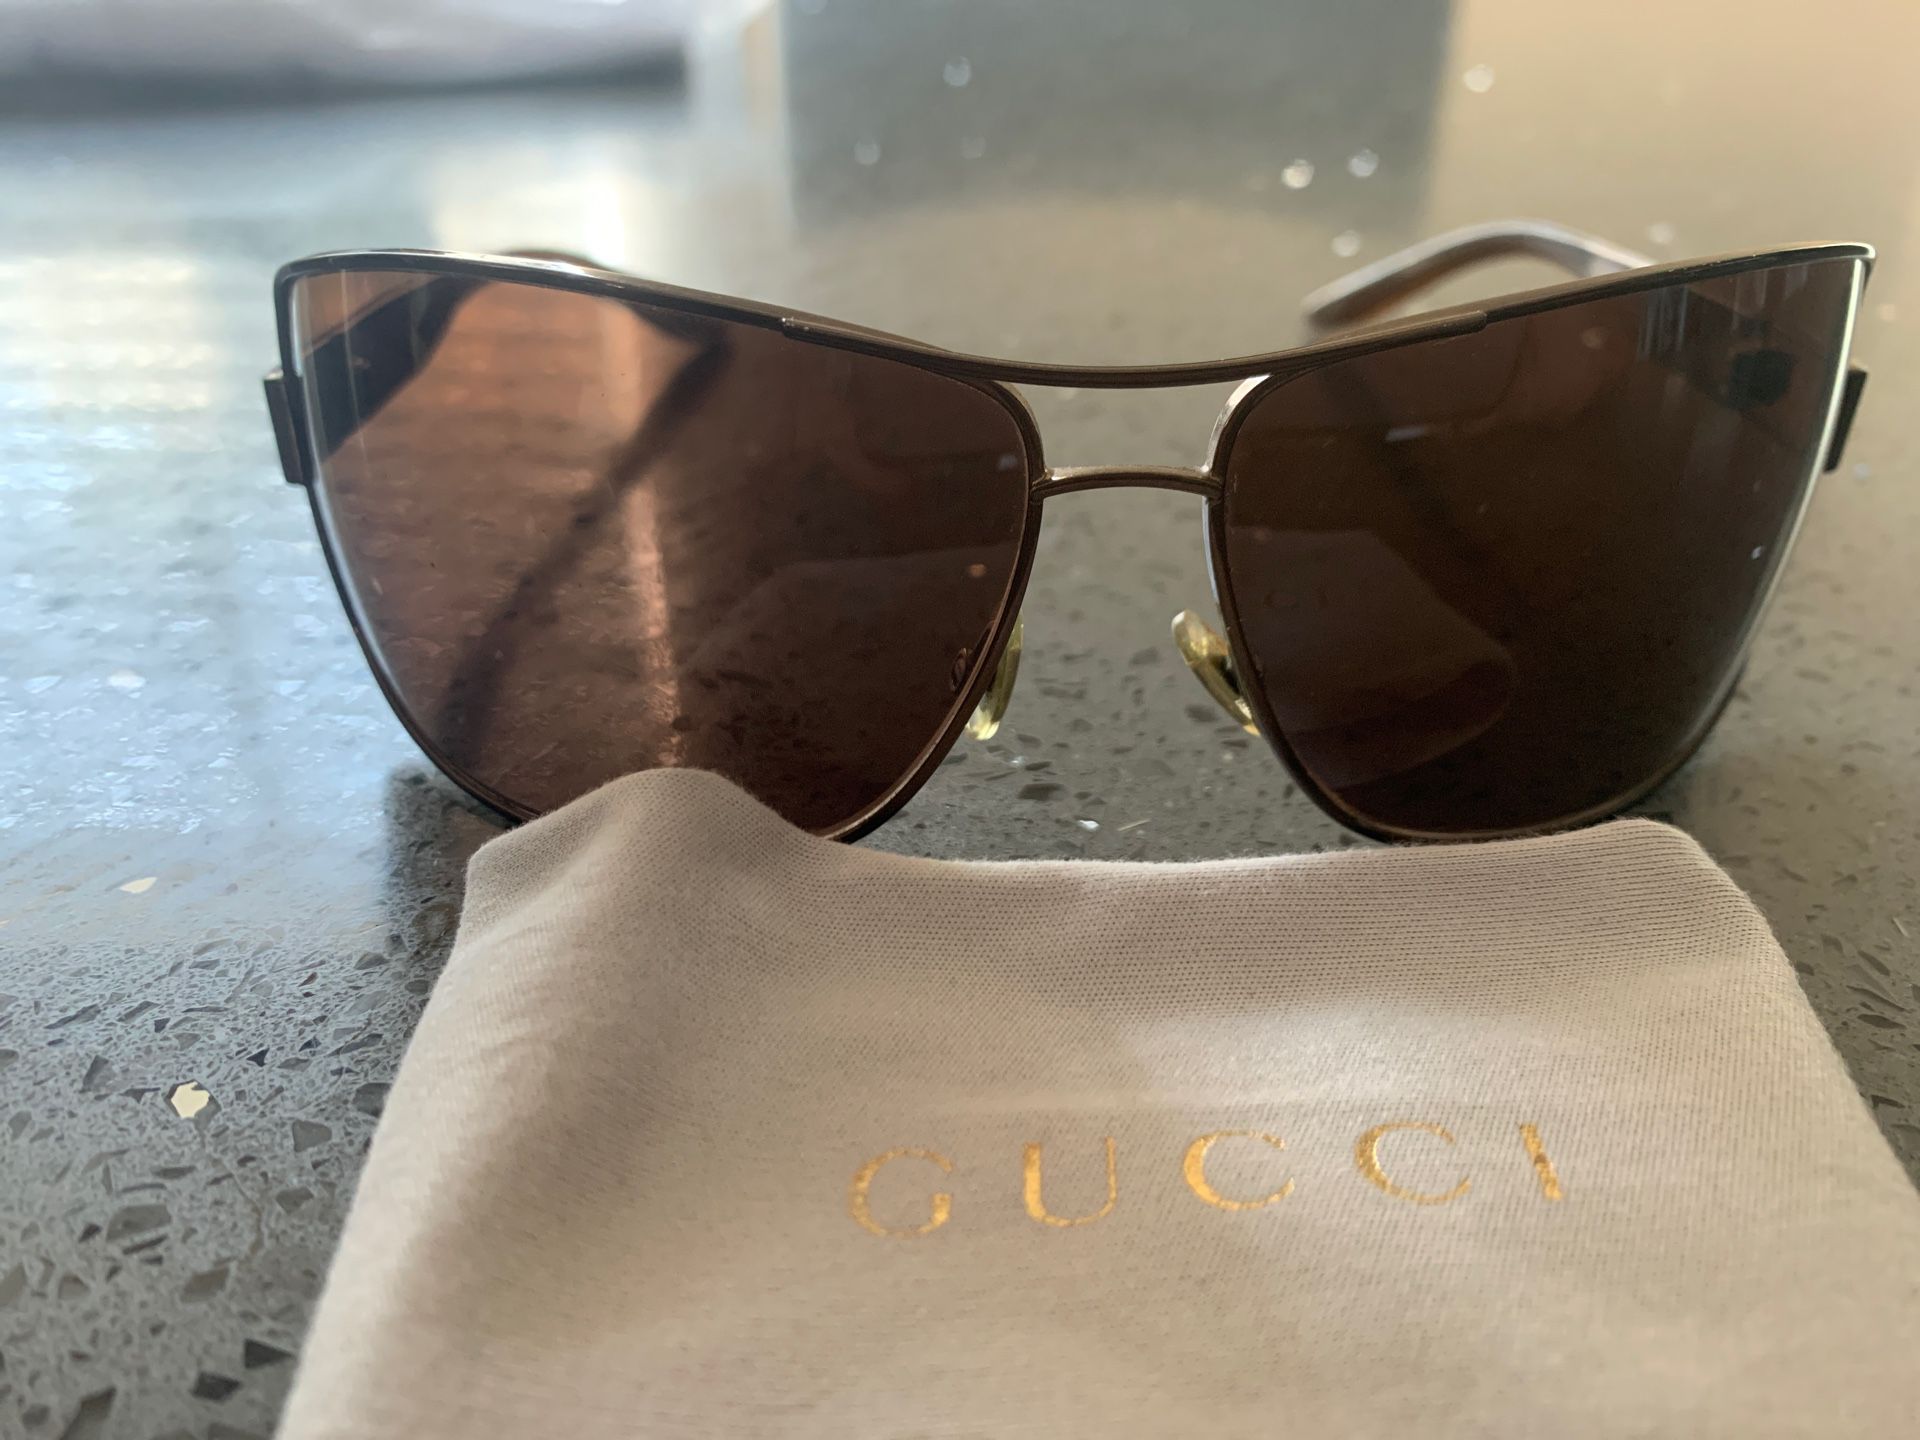 Gucci sun glasses